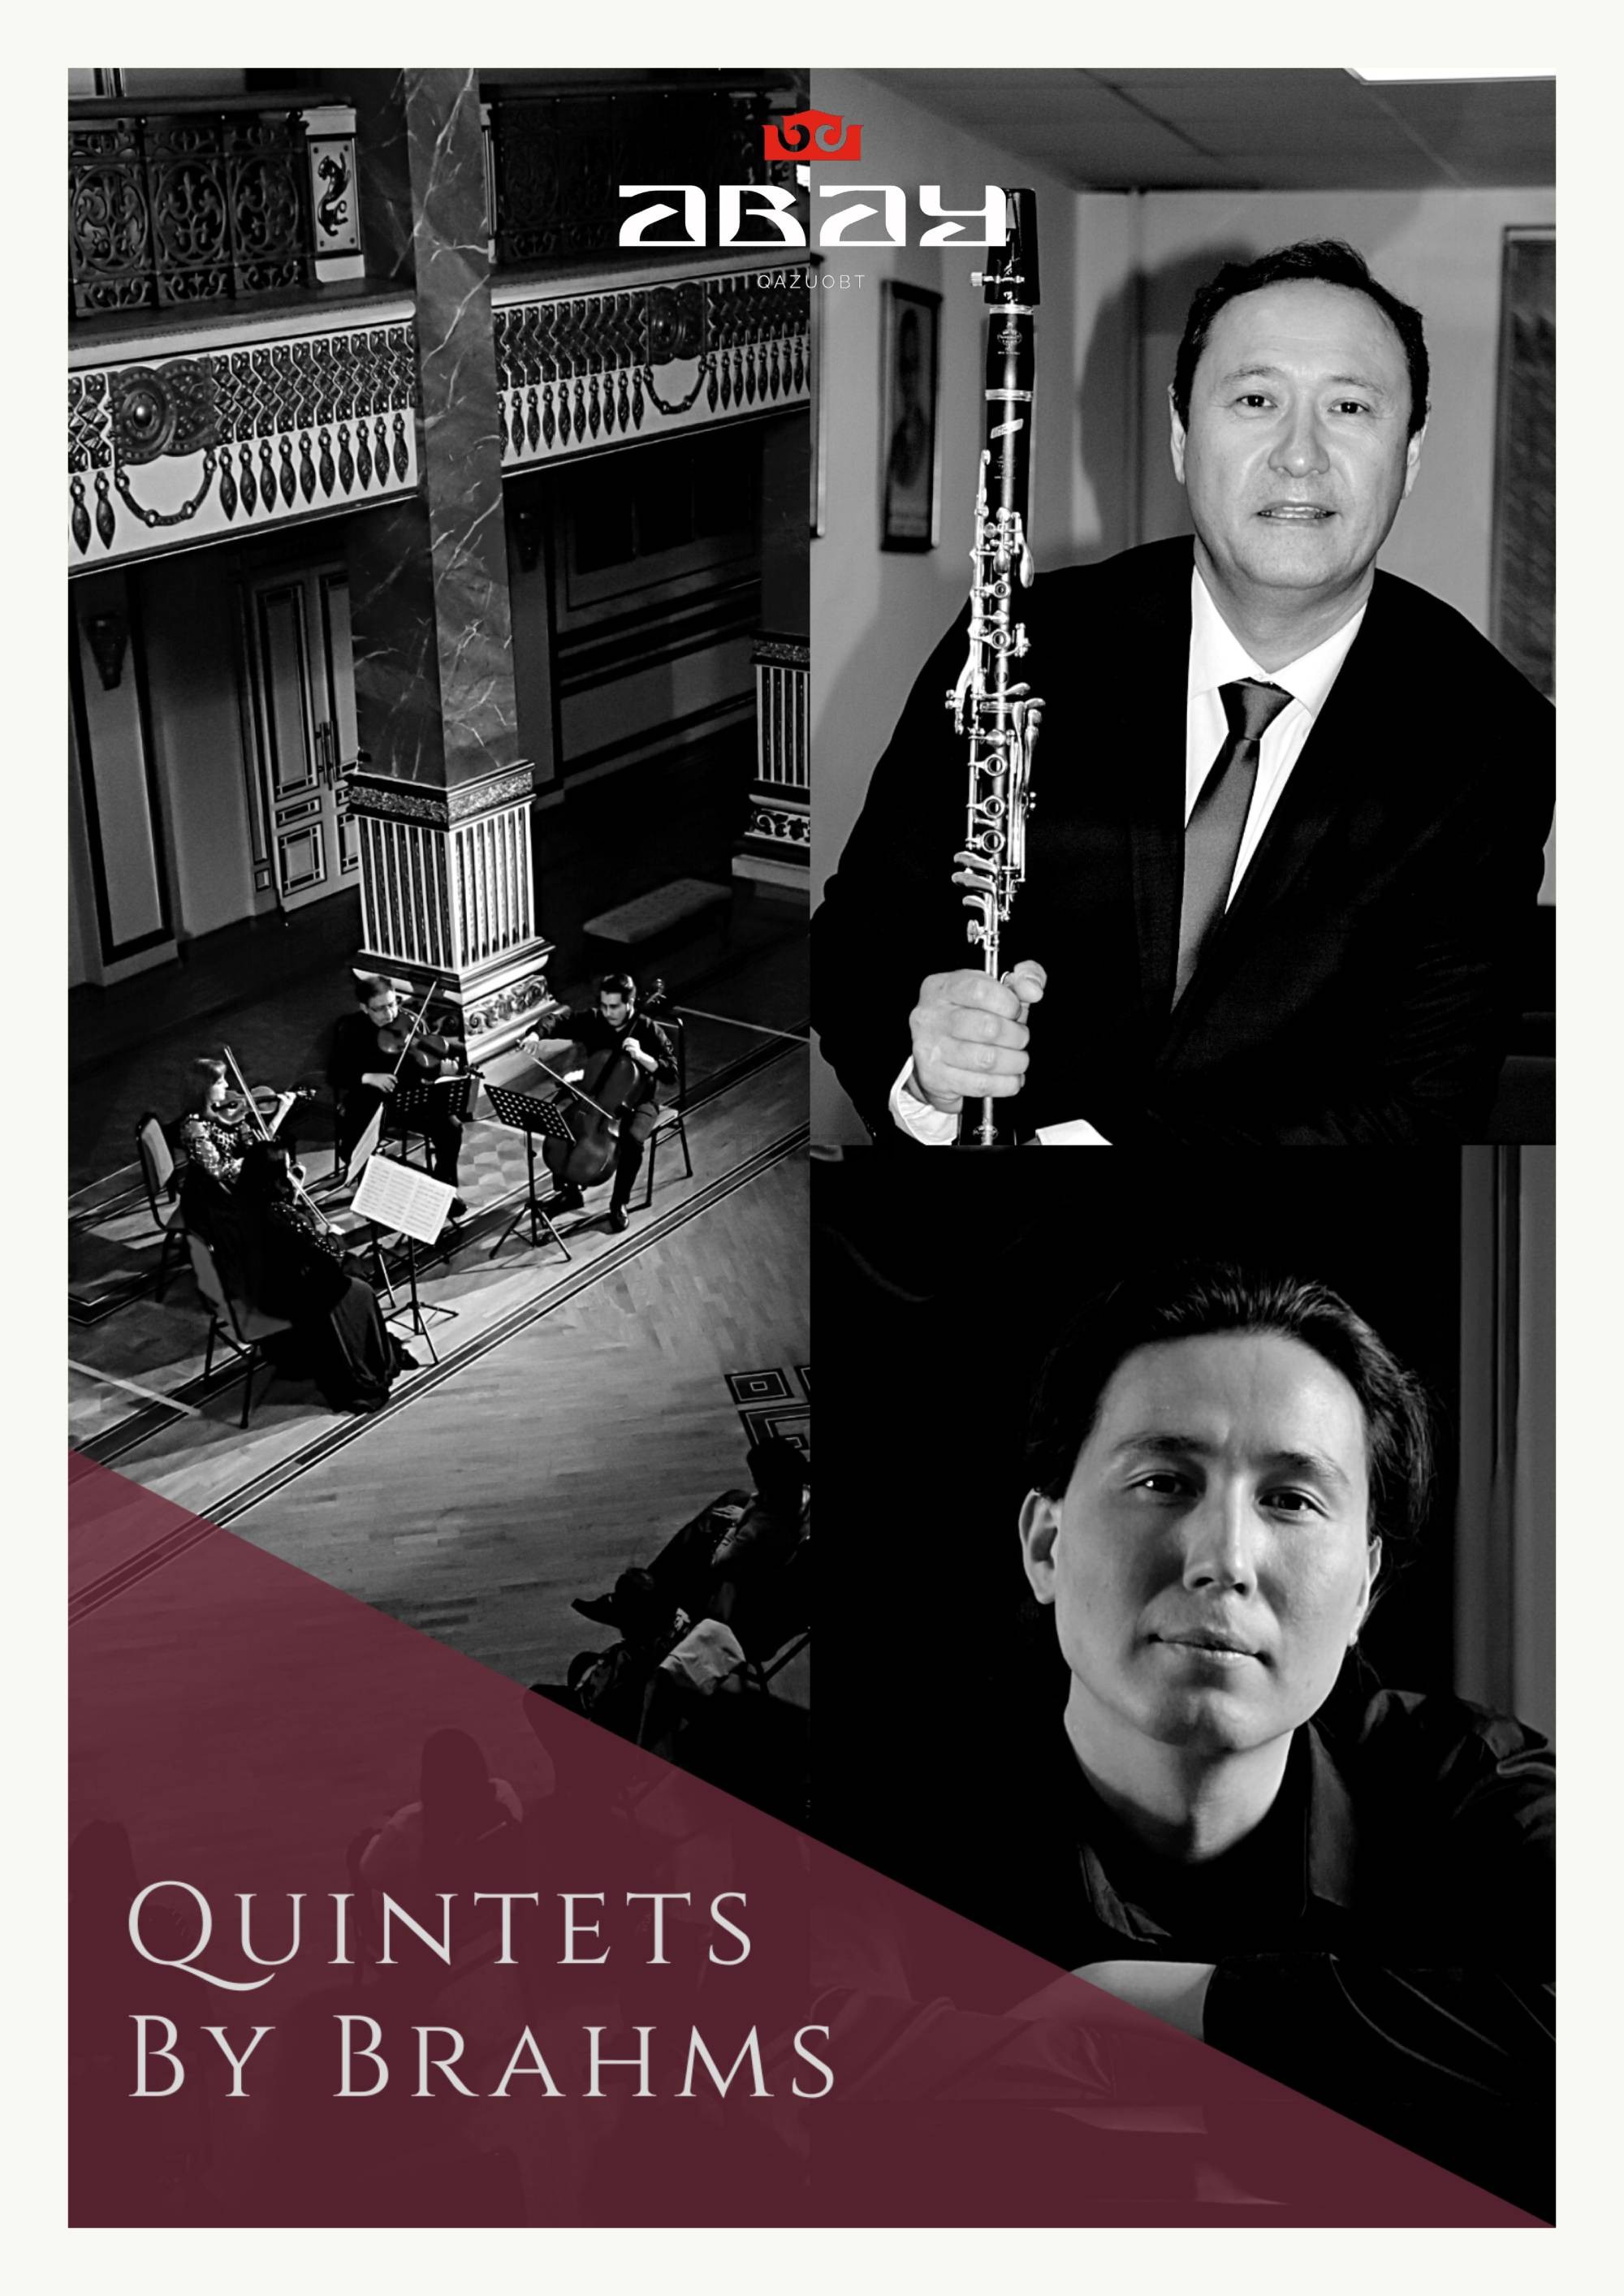 Quintets by Brahms